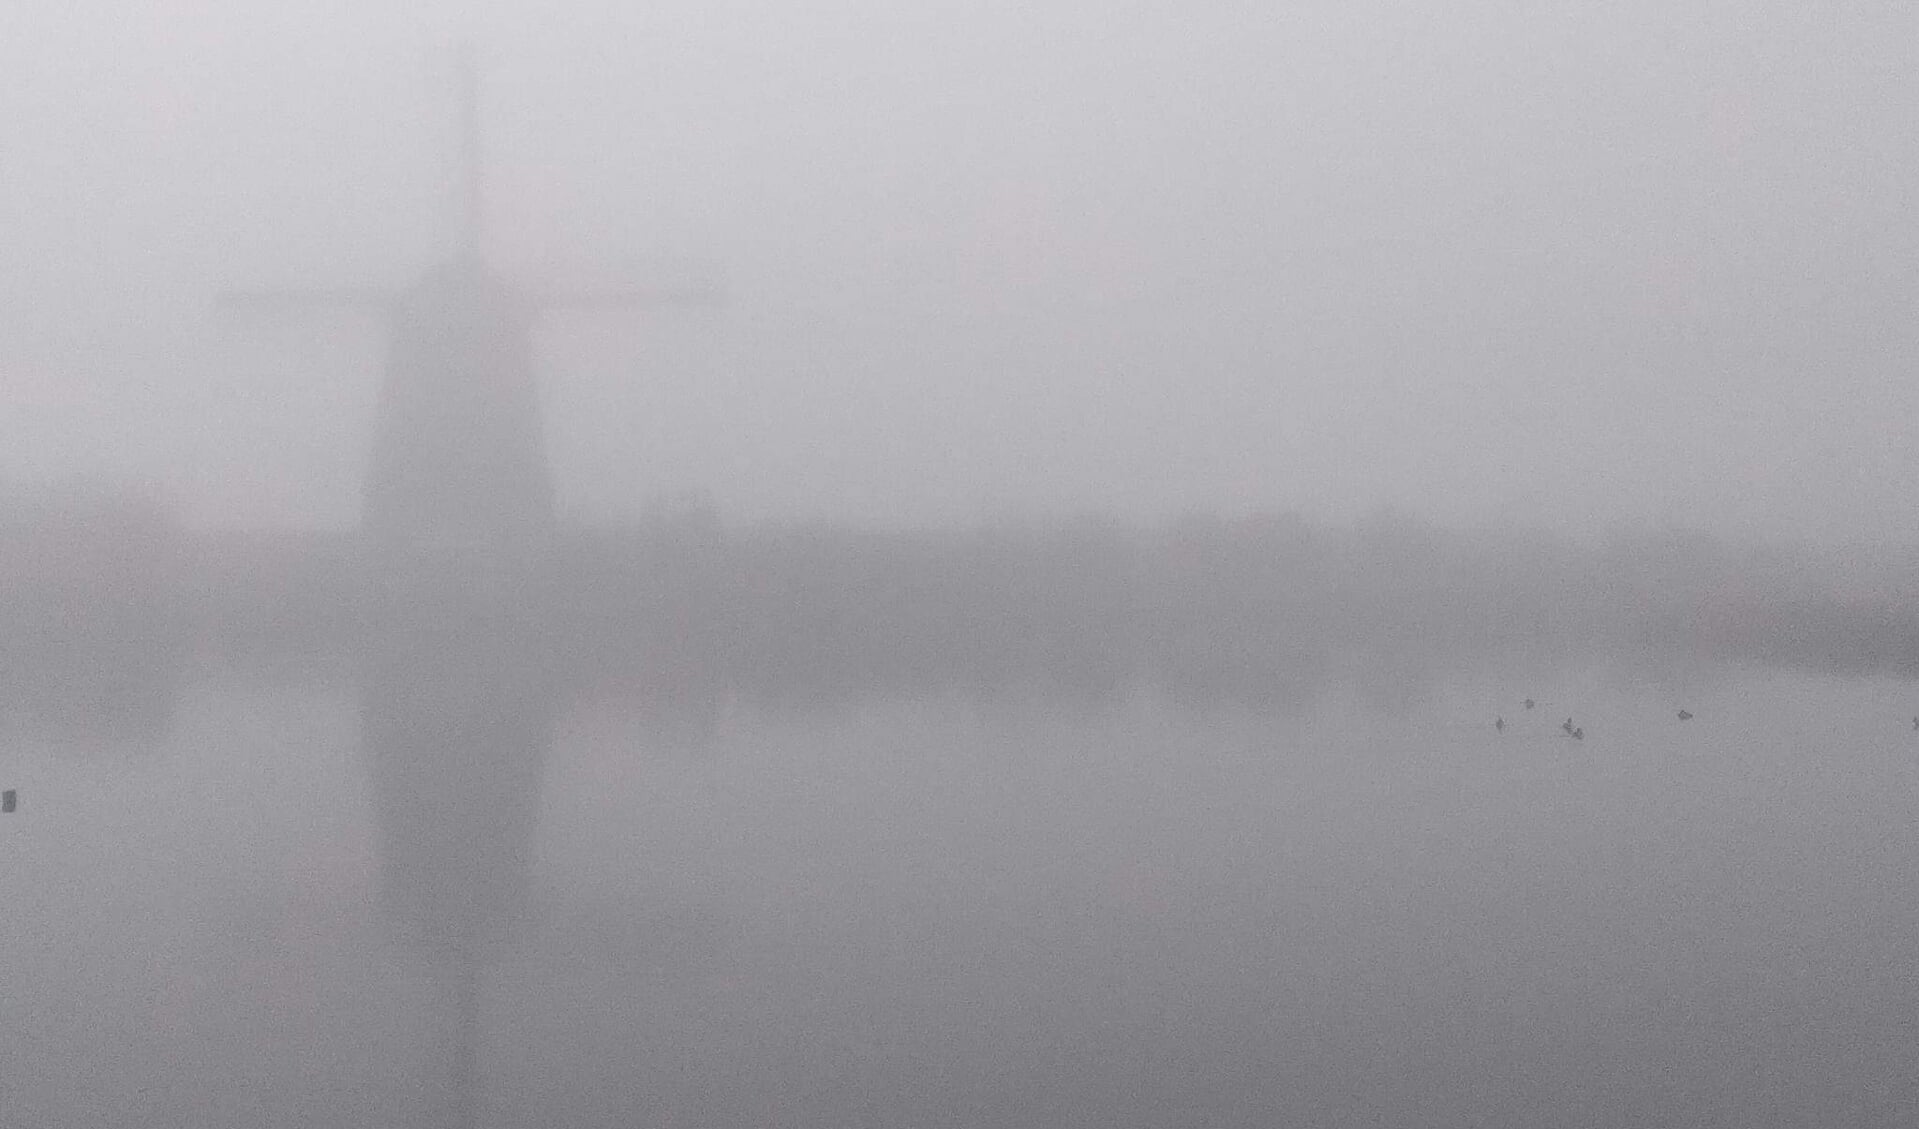 Welke molen staat er verscholen in de dikke mist van vanmorgen?